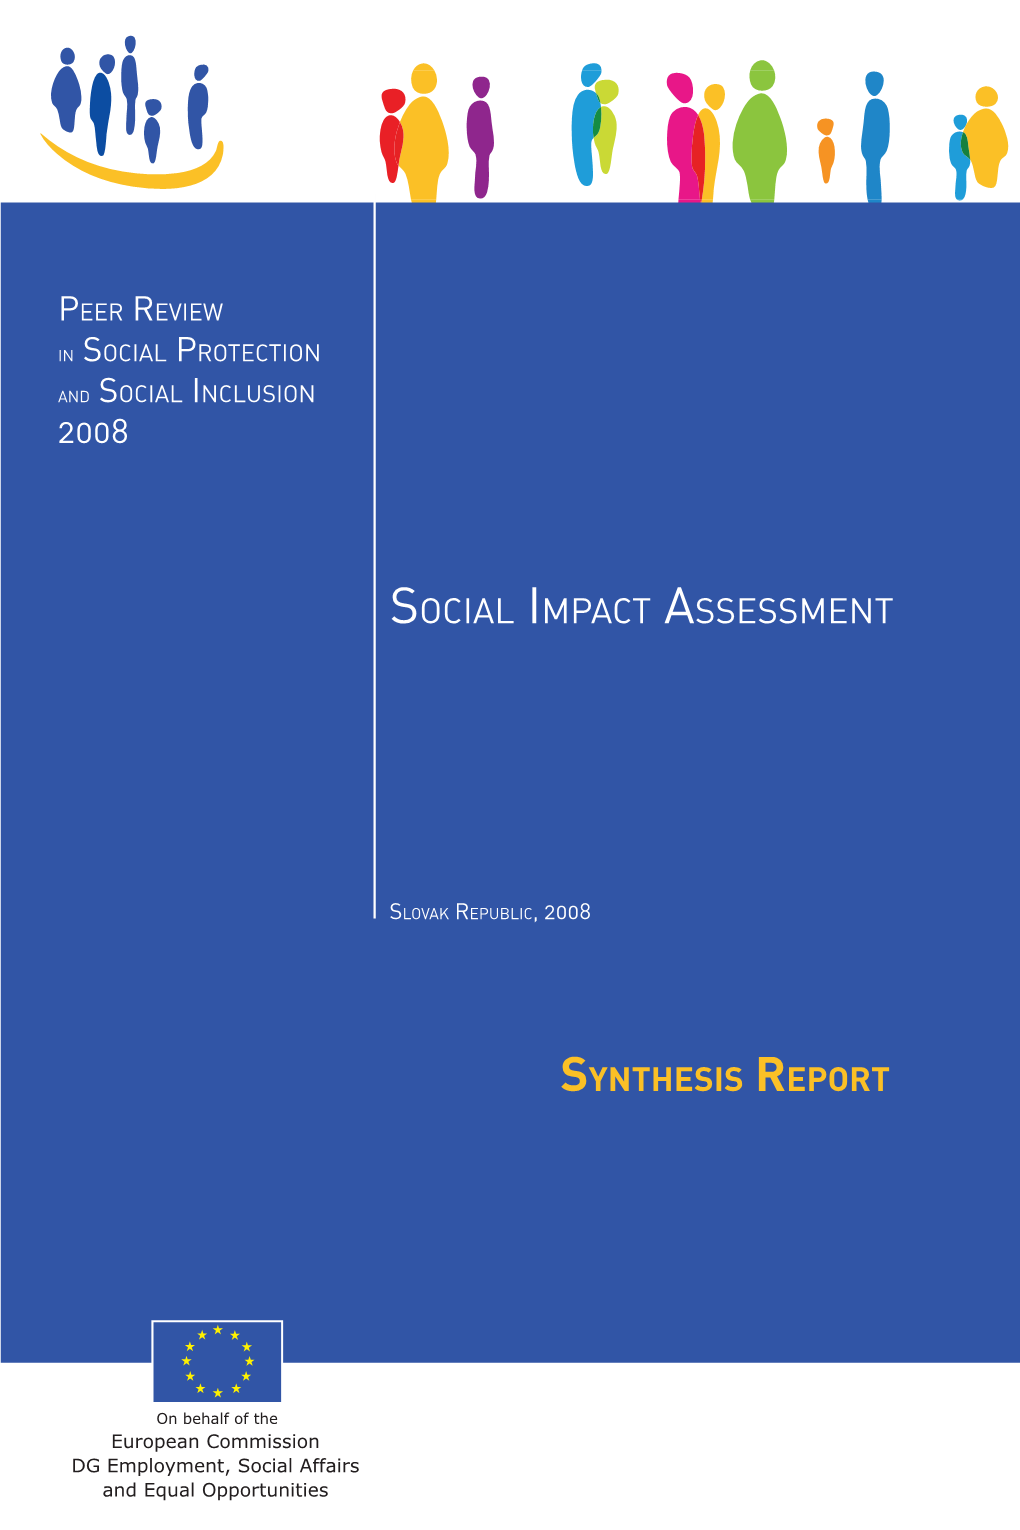 Social Impact Assessment